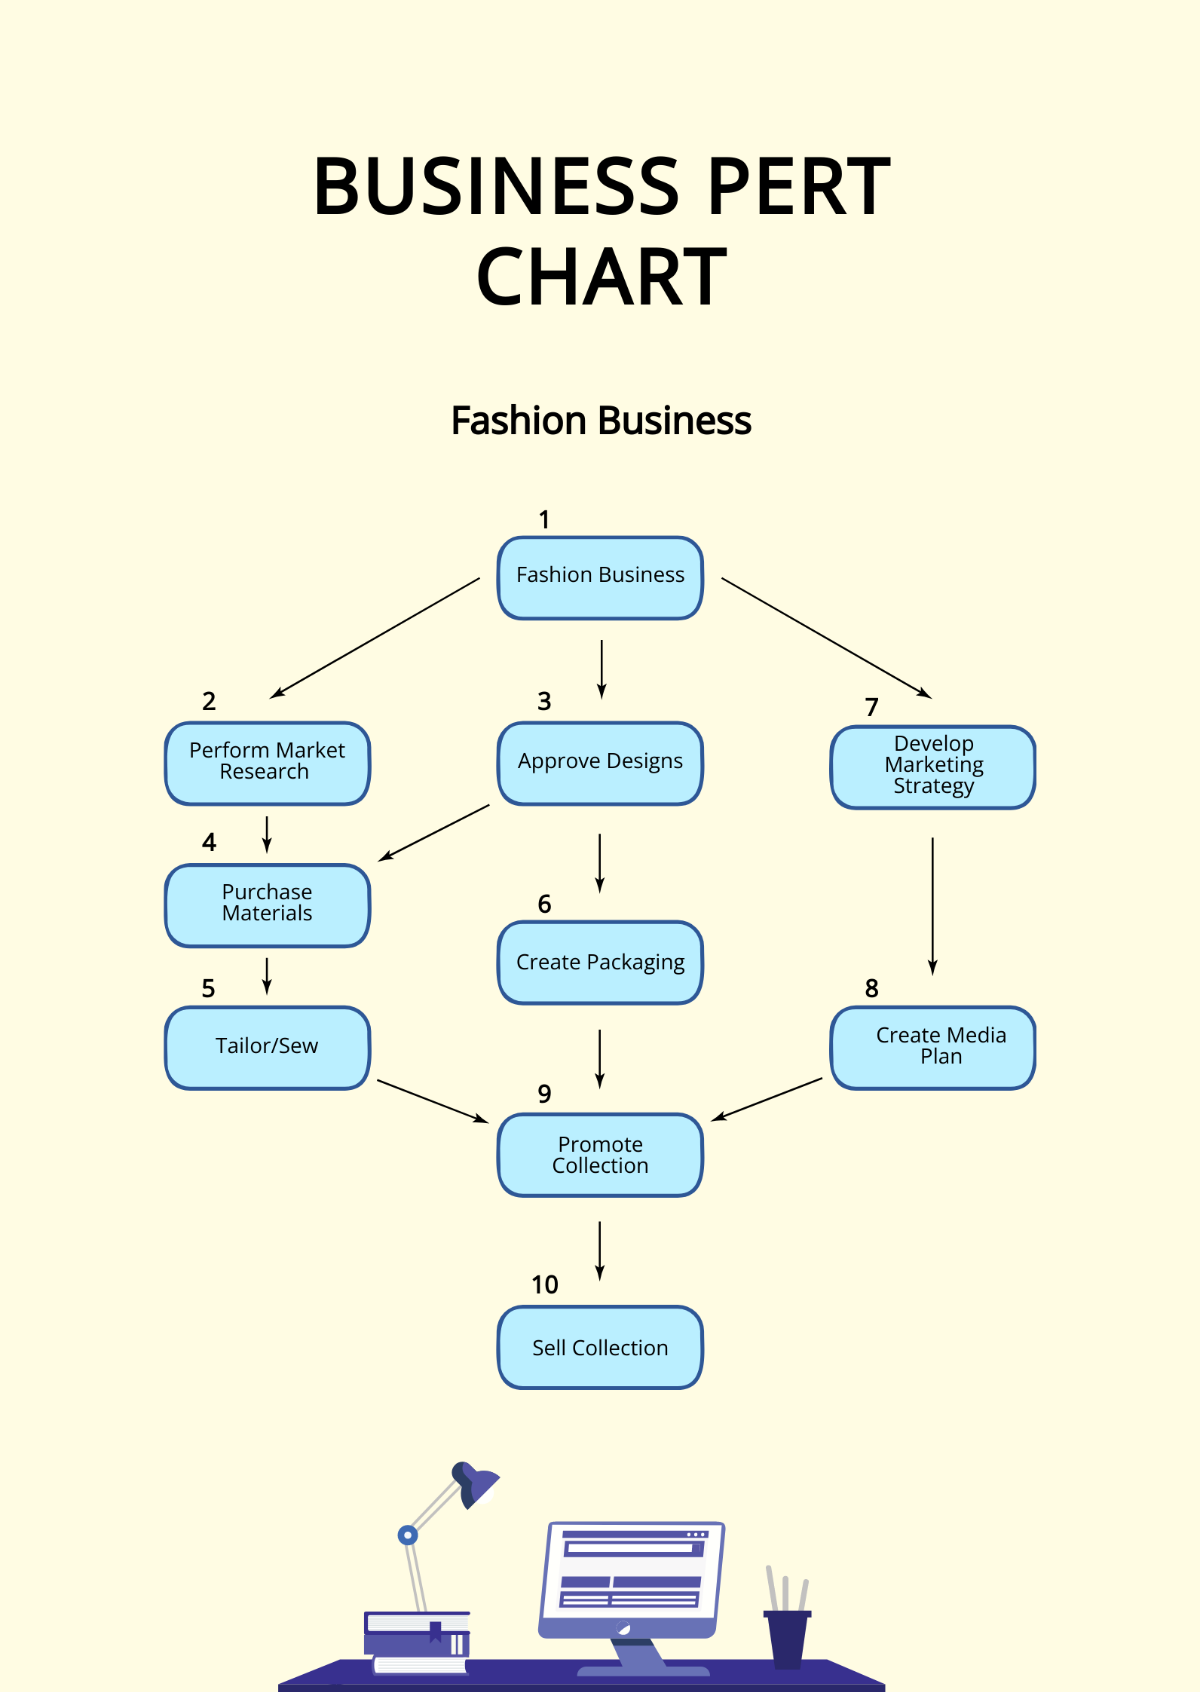 Business PERT Chart Template